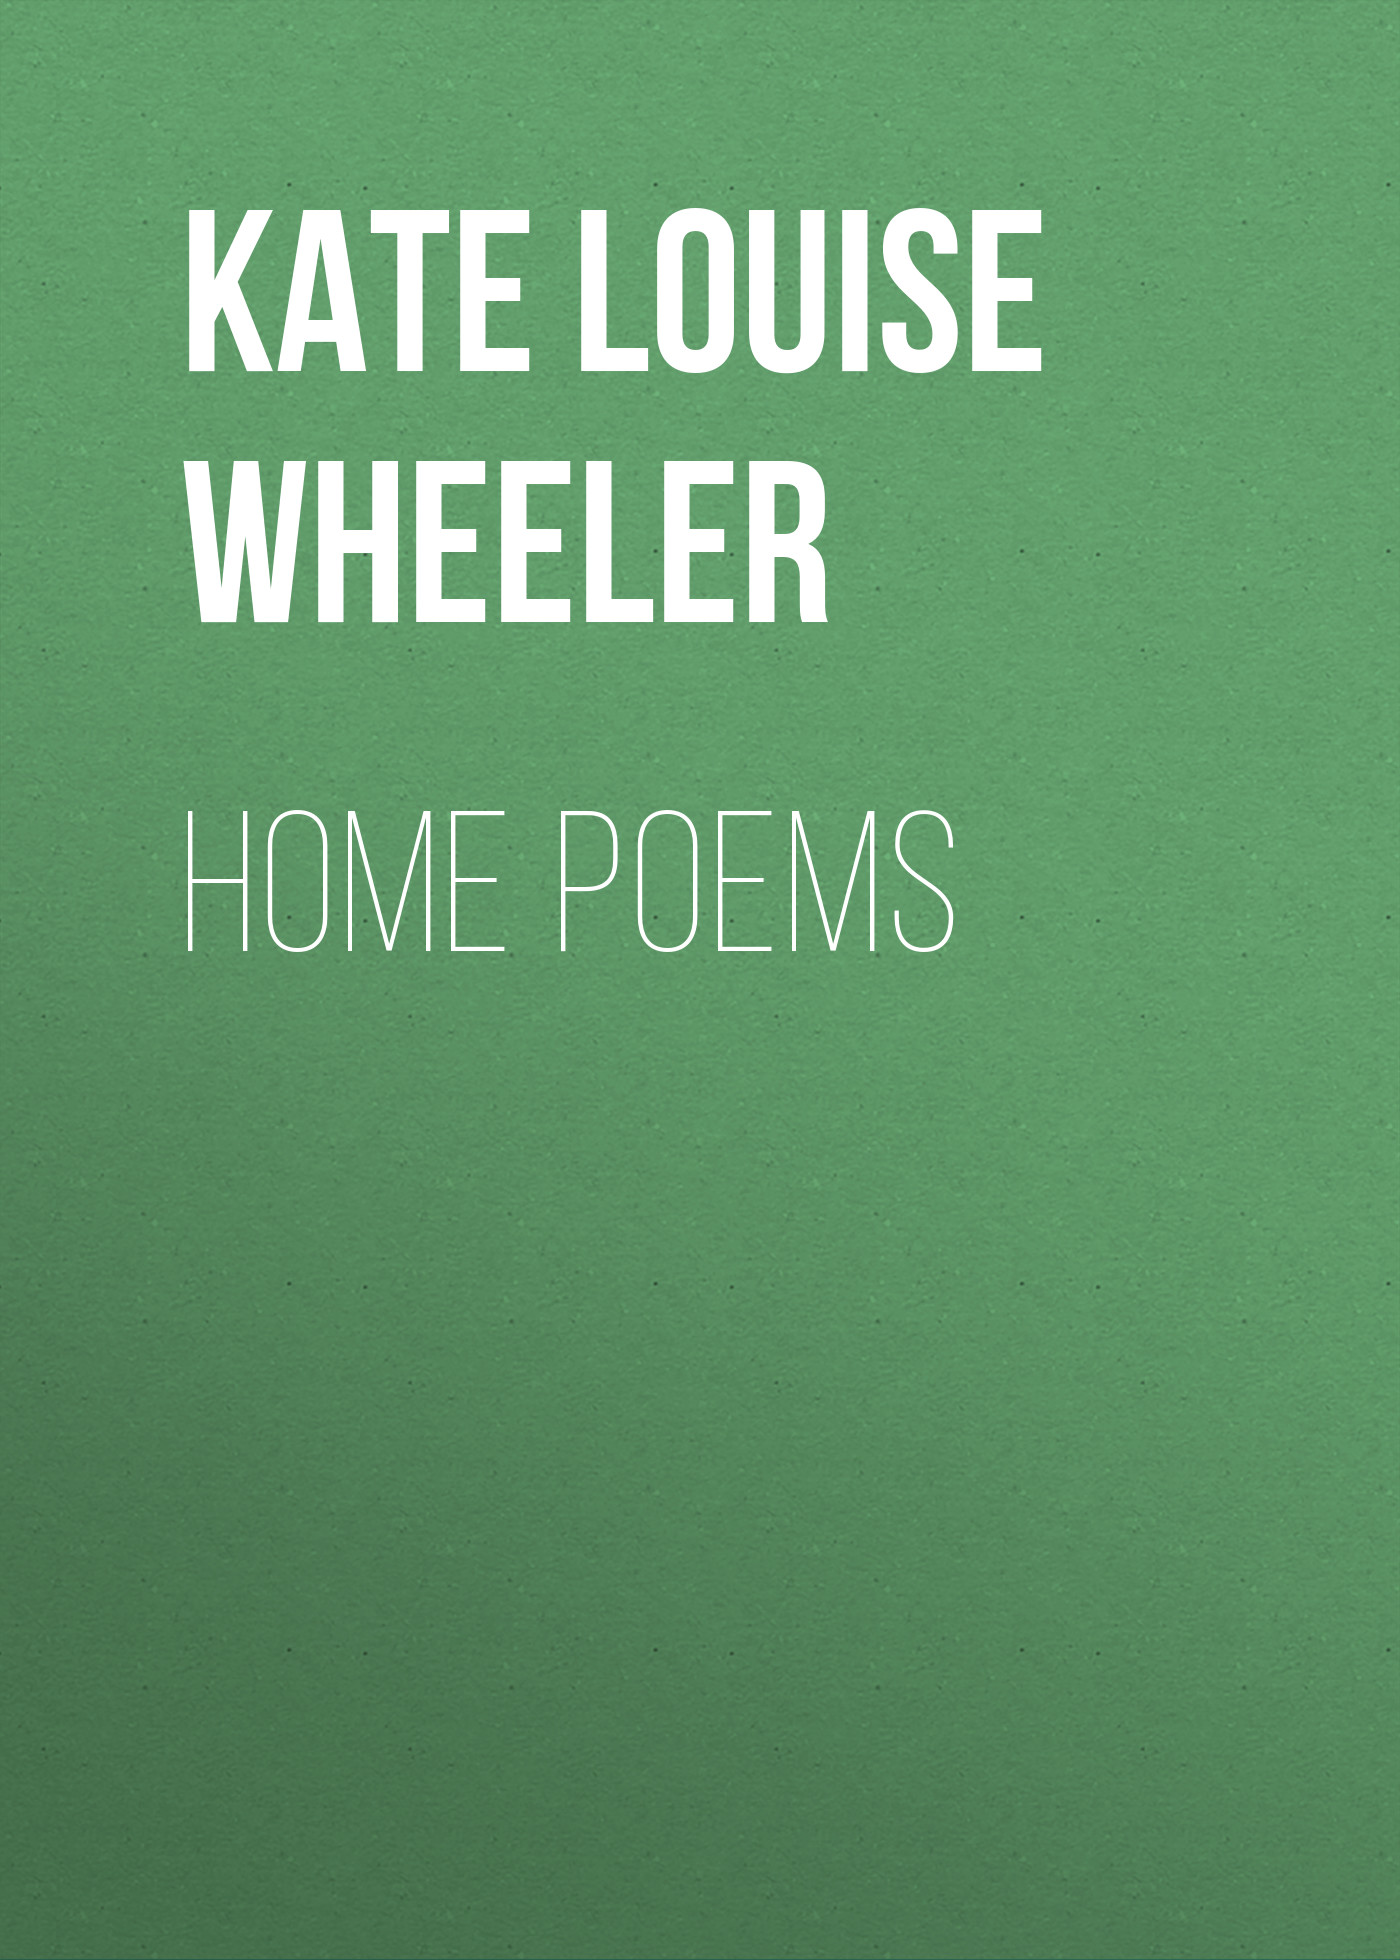 Книга Home Poems из серии , созданная Kate Wheeler, может относится к жанру Зарубежные стихи, Поэзия, Зарубежная старинная литература, Зарубежная классика. Стоимость электронной книги Home Poems с идентификатором 34337050 составляет 0 руб.